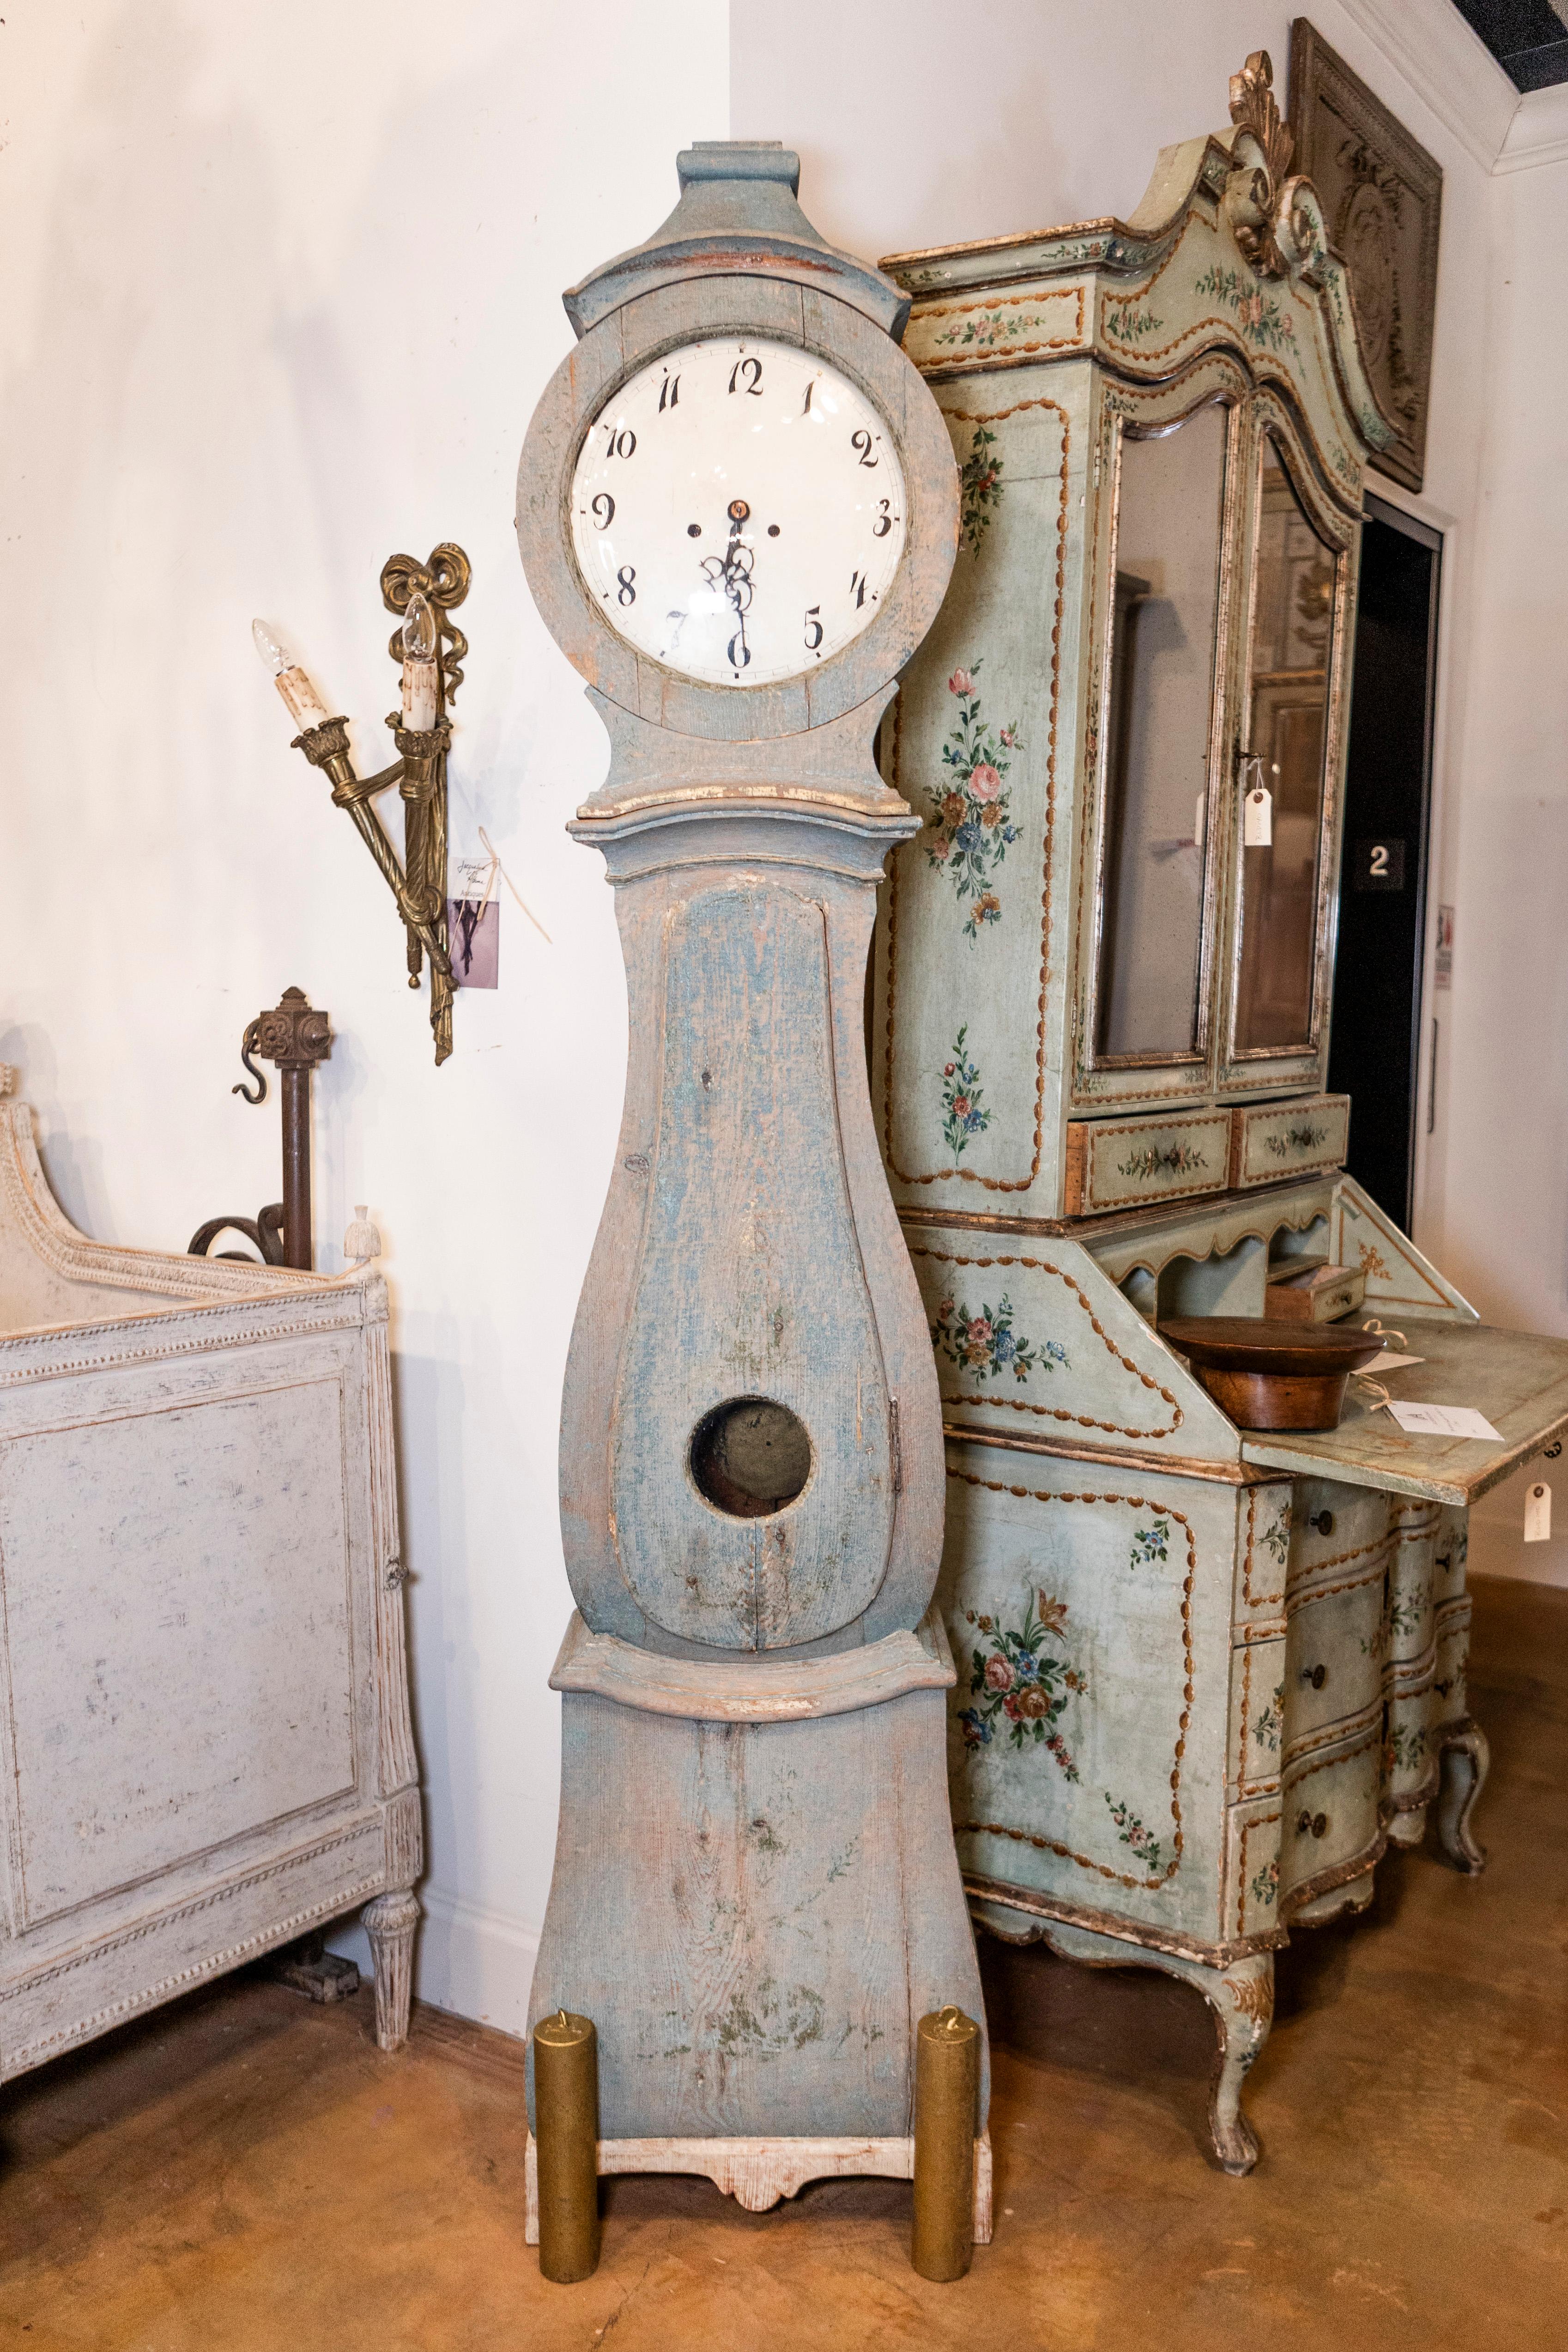  Horloge suédoise Mora en bois peint, datant des années 1790, avec un cimier sculpté, une finition peinte en bleu gris et une seule porte. Cette exquise horloge suédoise Mora, datant des années 1790, témoigne d'un savoir-faire et d'un style